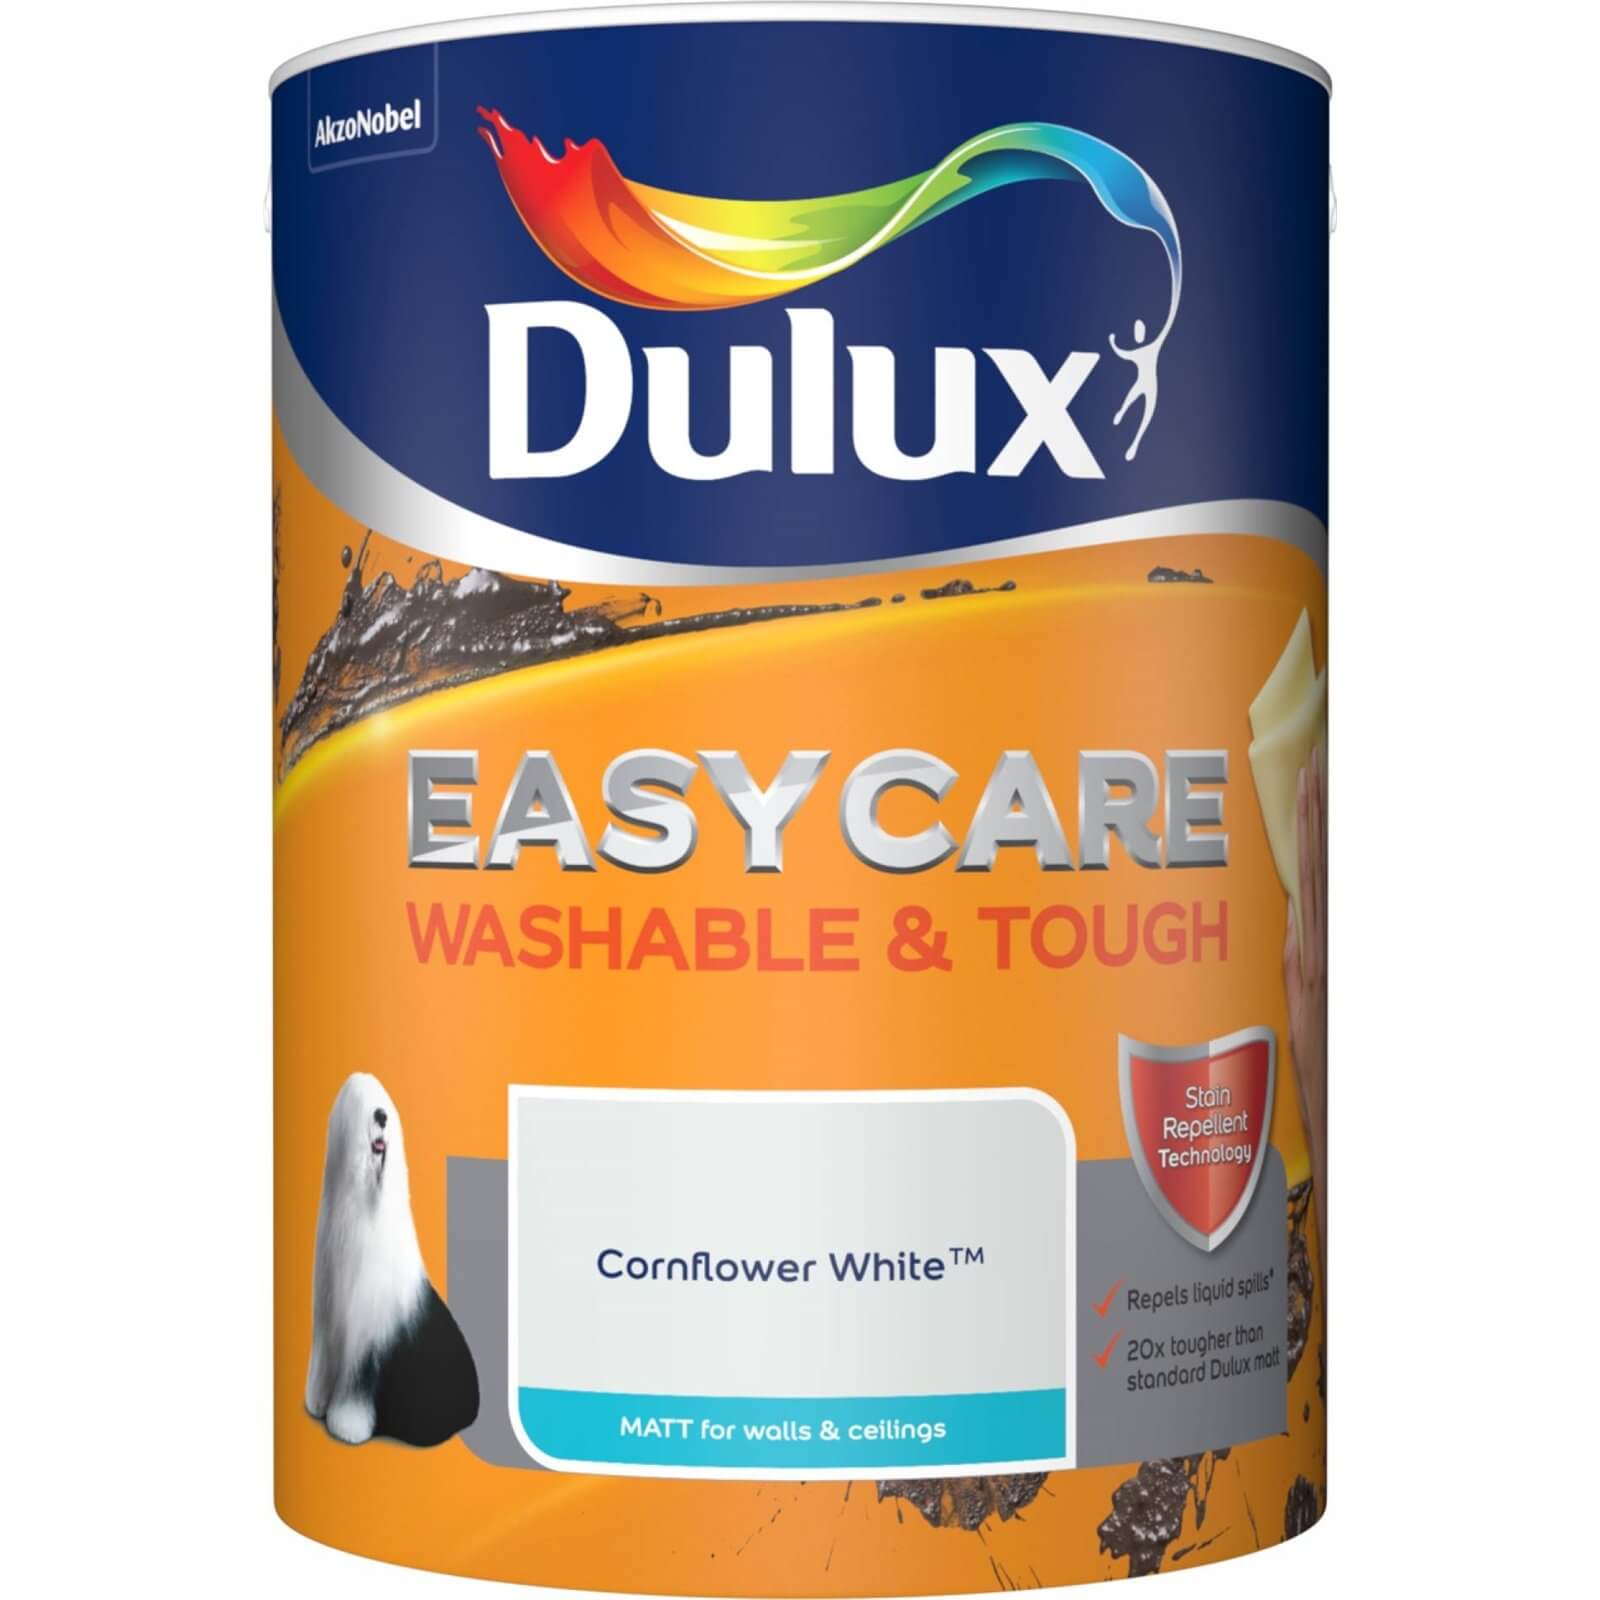 Dulux Easycare Washable & Tough Cornflower White Matt Paint - 5L